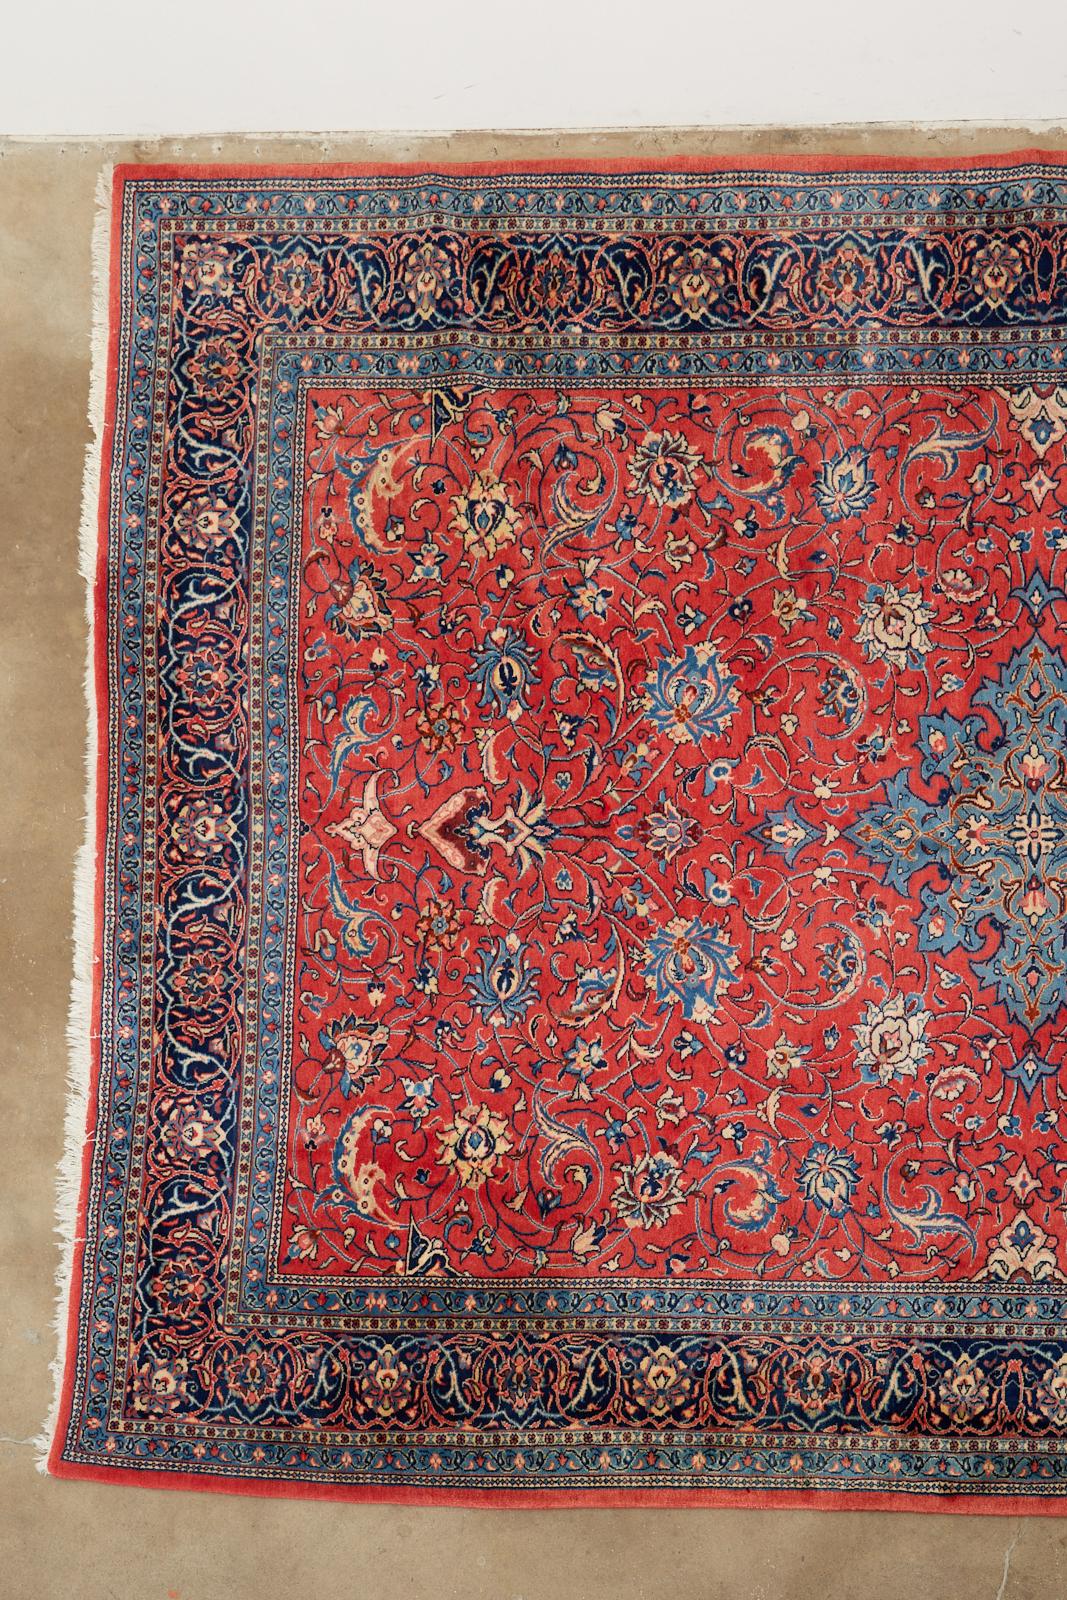 Luxueux tapis sarouk persan traditionnel présentant un médaillon en forme d'étoile sur un champ rouge rubis vibrant. Le tapis a un velouté de laine nouée à la main avec des motifs de vignes et de tiges florales enroulées. Les bordures sont d'un bleu